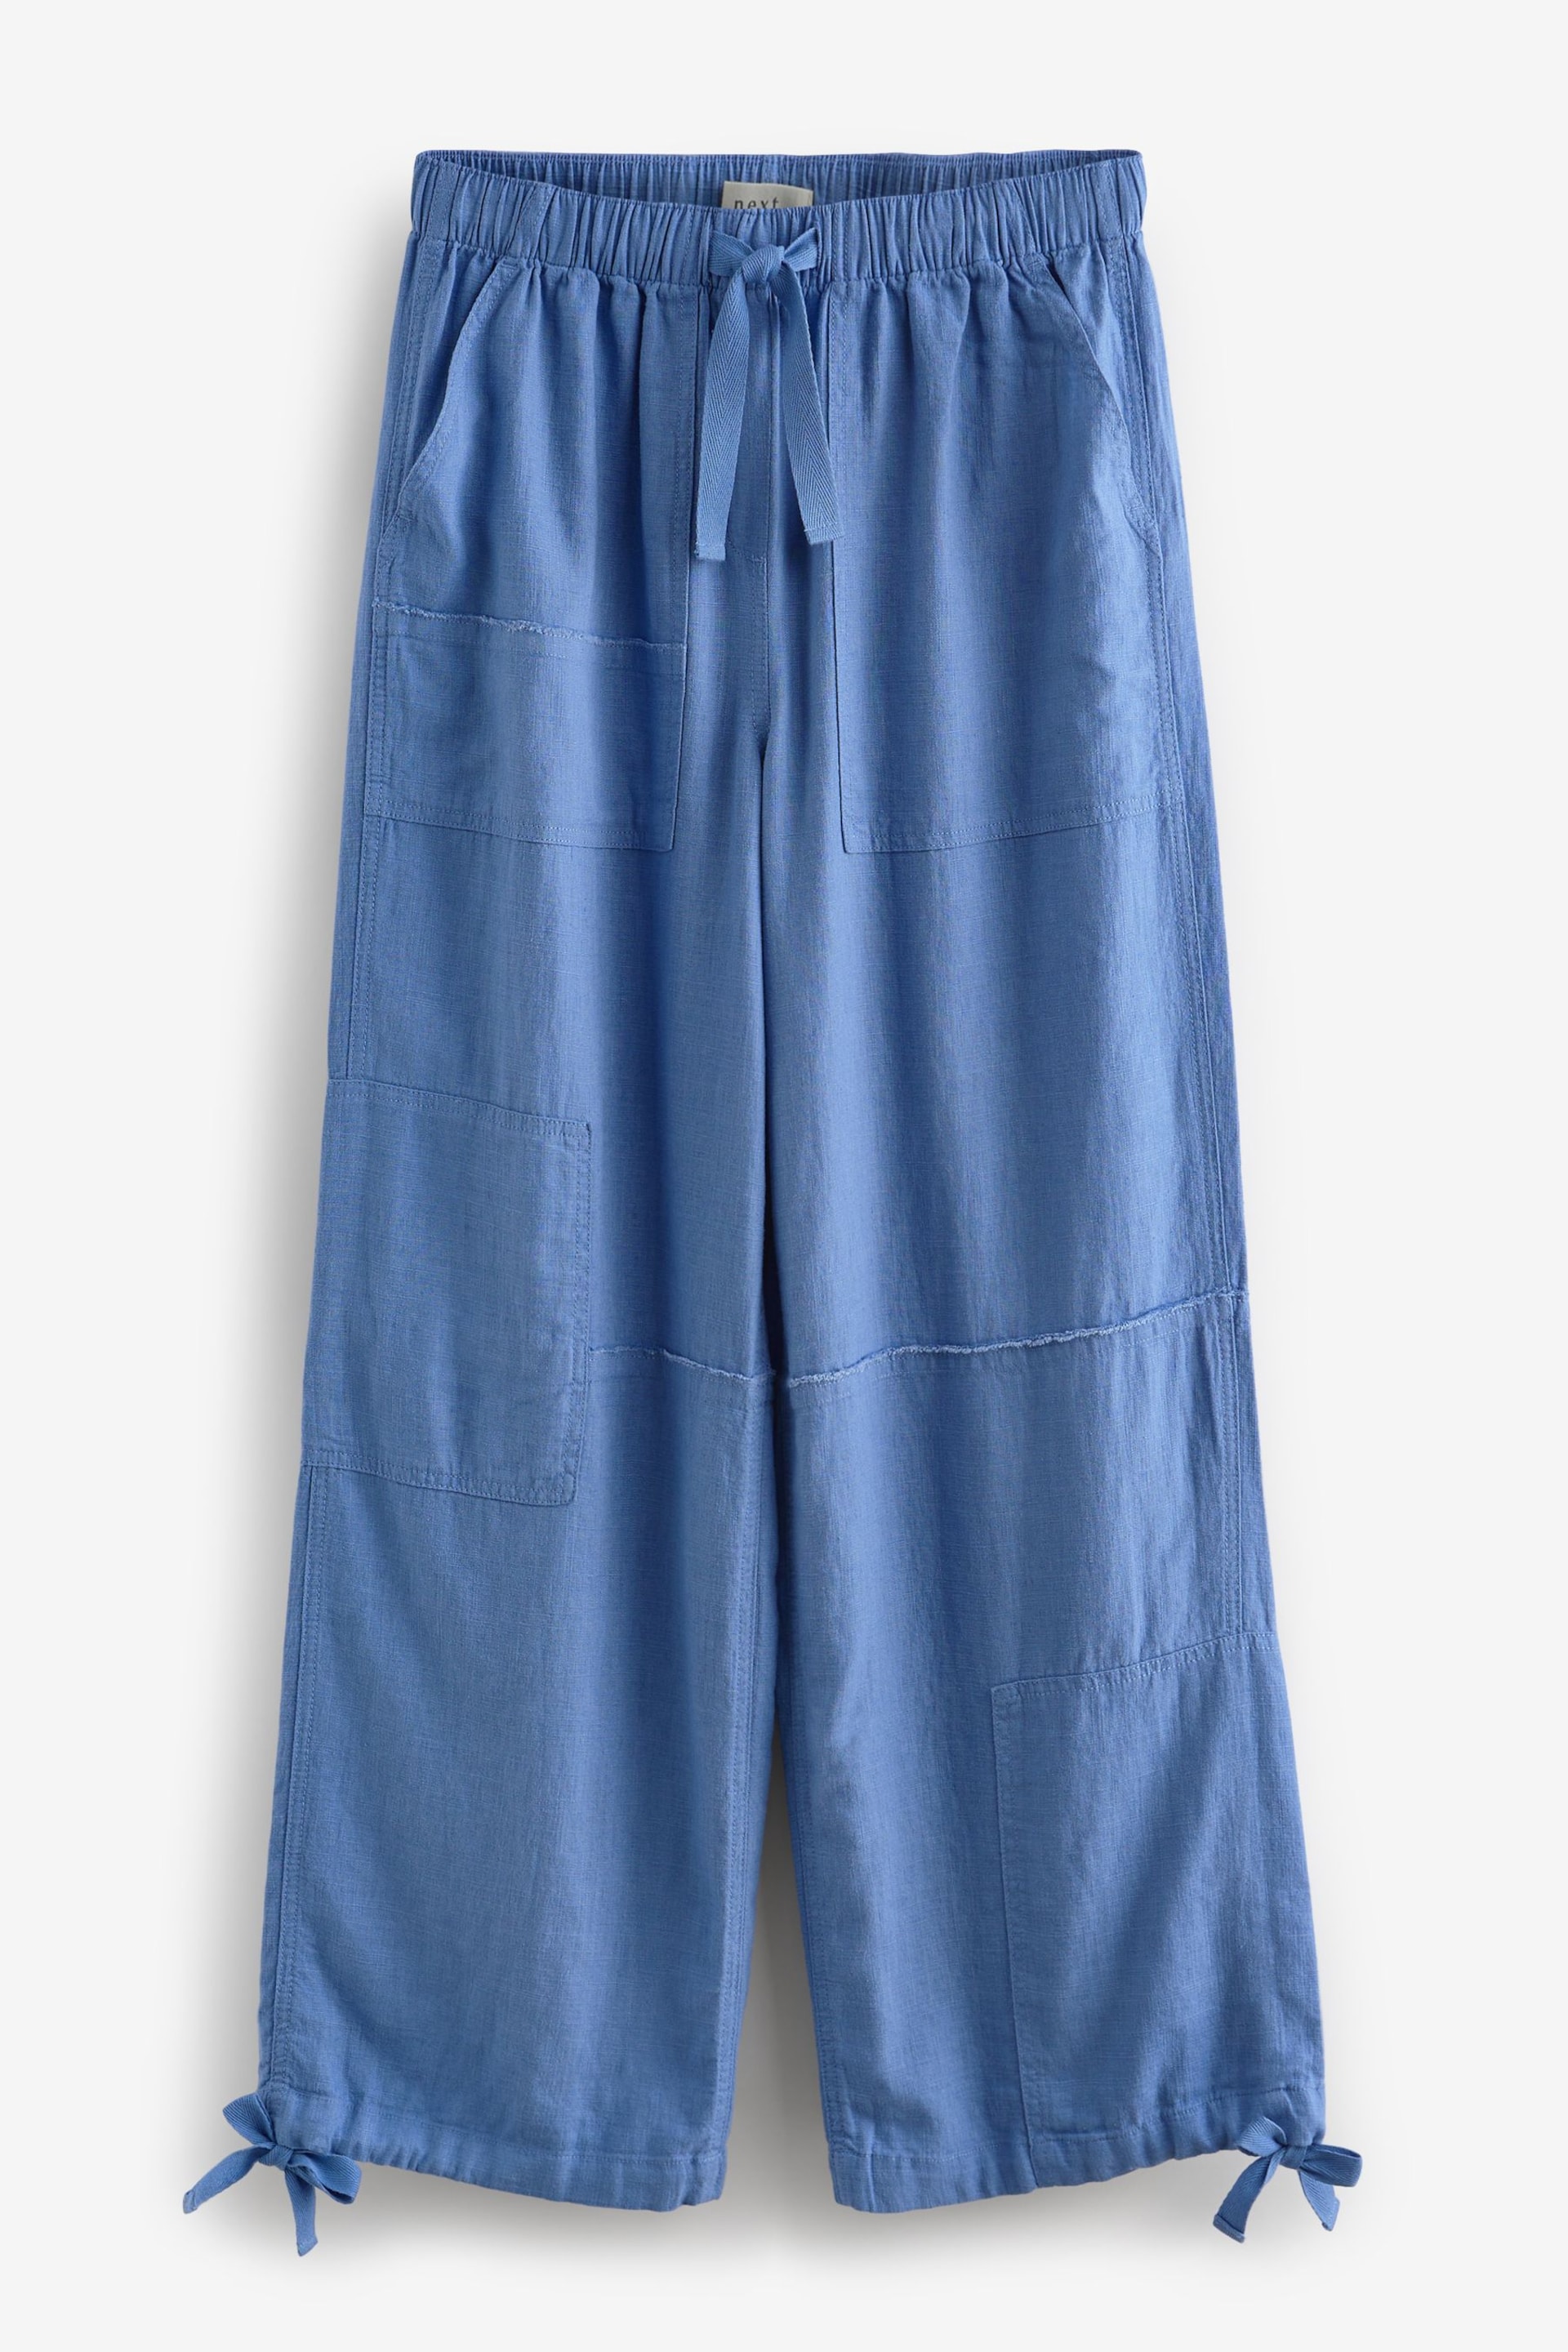 Blue Linen Blend Parachute Trousers - Image 6 of 7